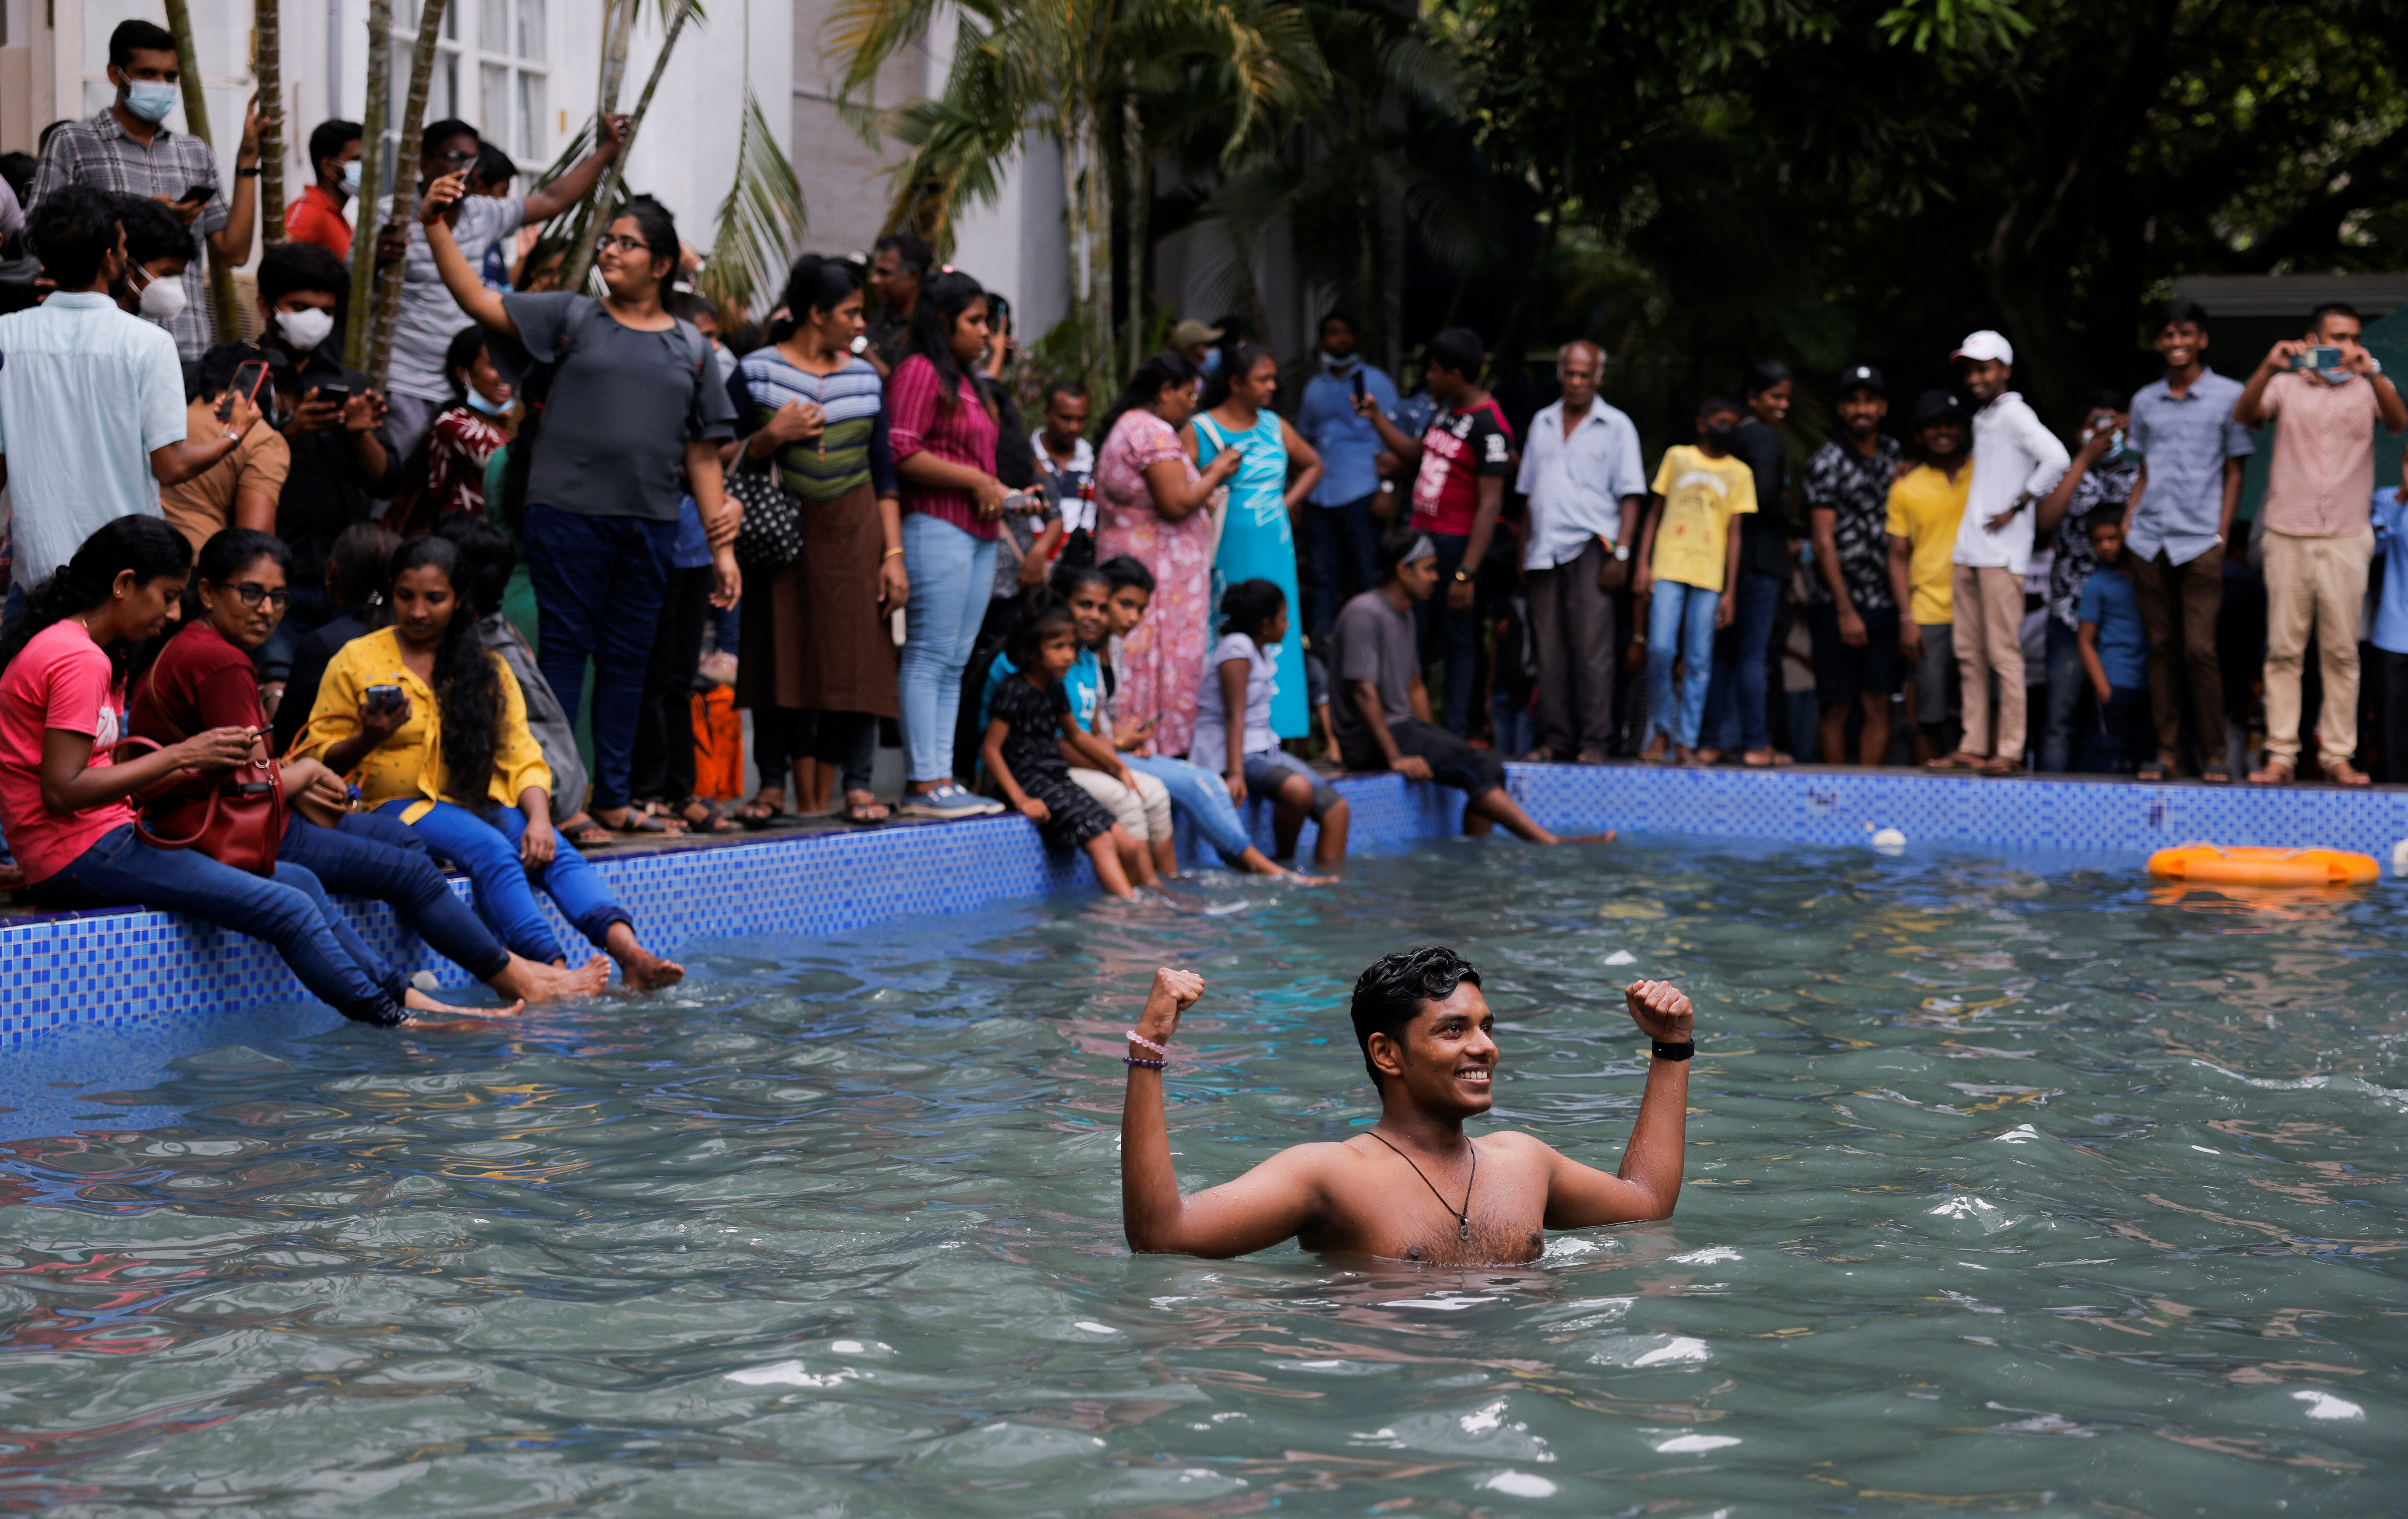 Un hombre se encuentra en la piscina mientras la gente visita la casa del presidente el día después de que los manifestantes ingresaran al edificio (REUTERS/Dinuka Liyanawatte)